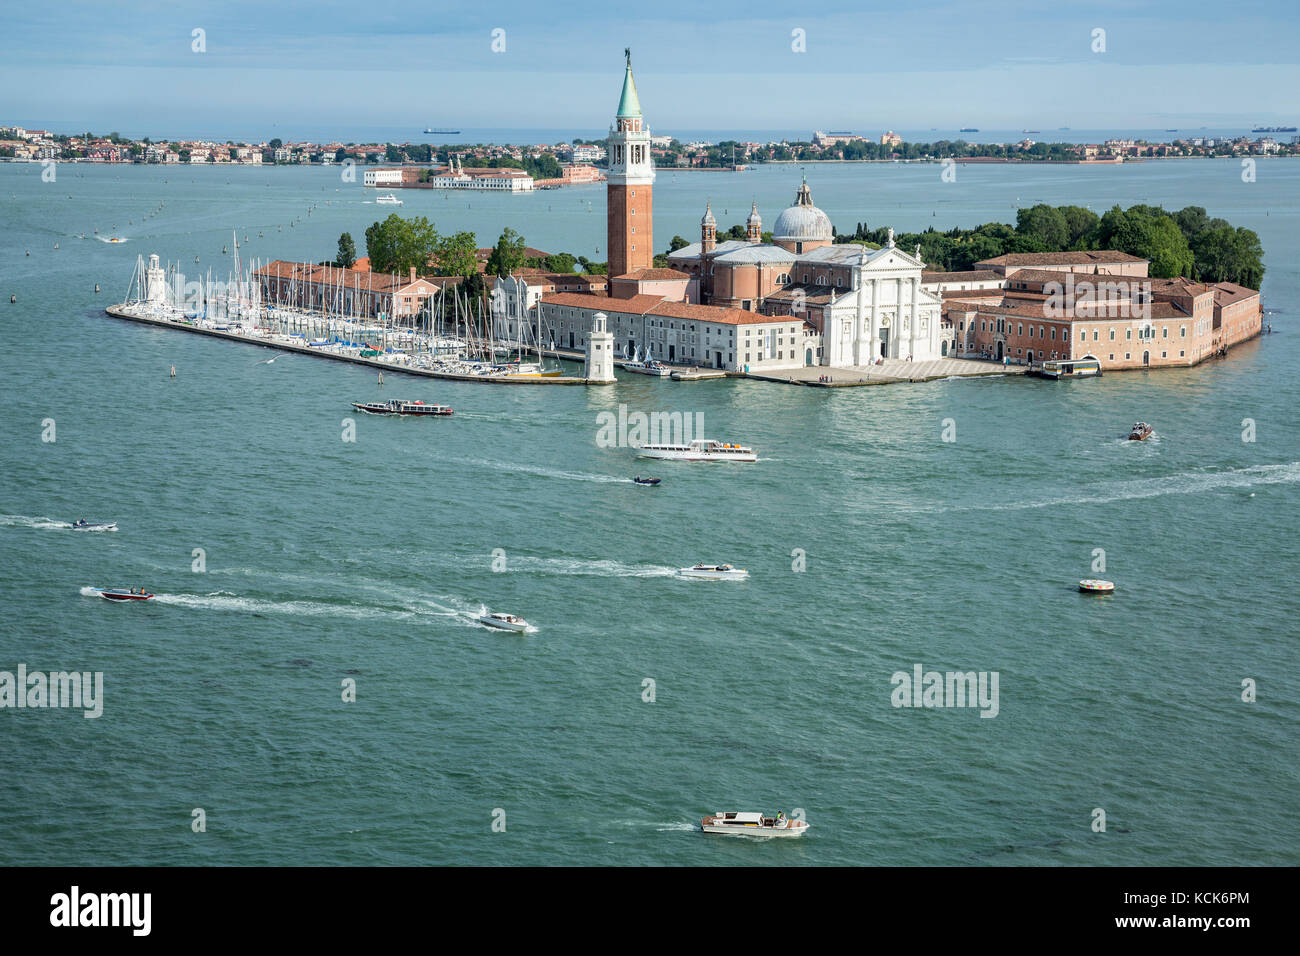 L'île de San Giorgio Maggiore, dans la lagune de Venise, Italie Banque D'Images